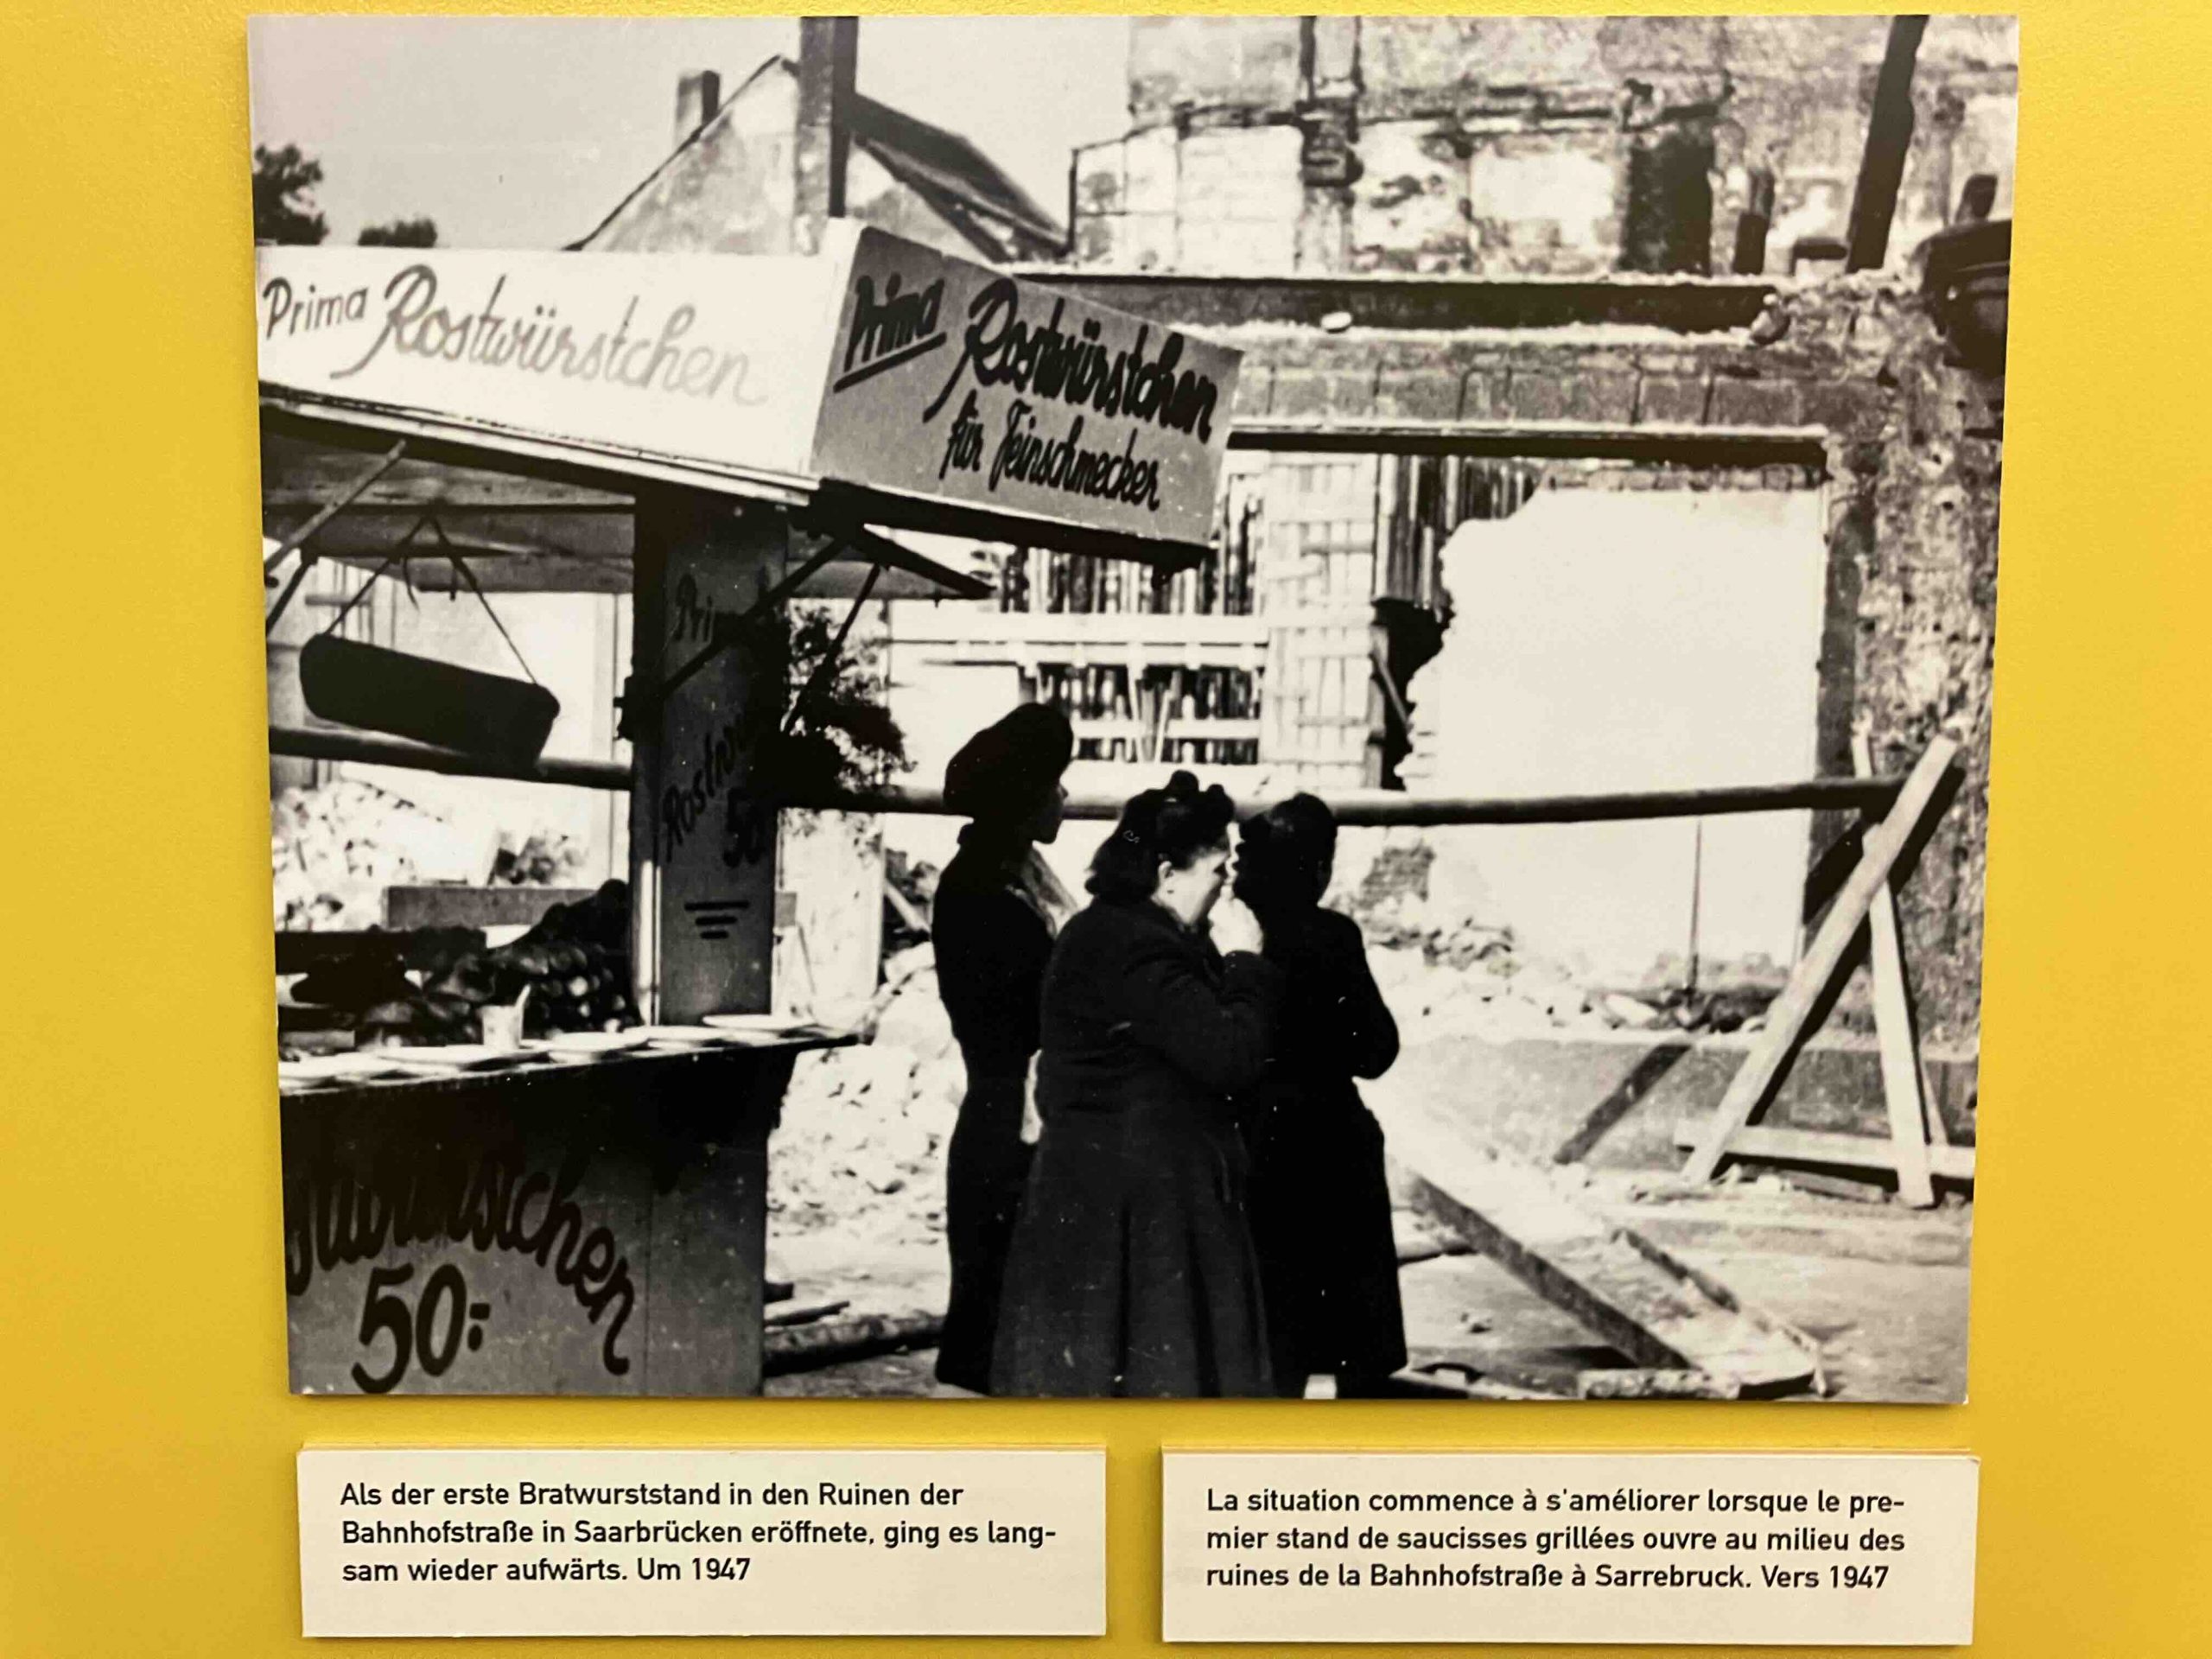 Foto der ersten Bartwurstbude in Saarbrücken nach dem zweiten Weltkrieg